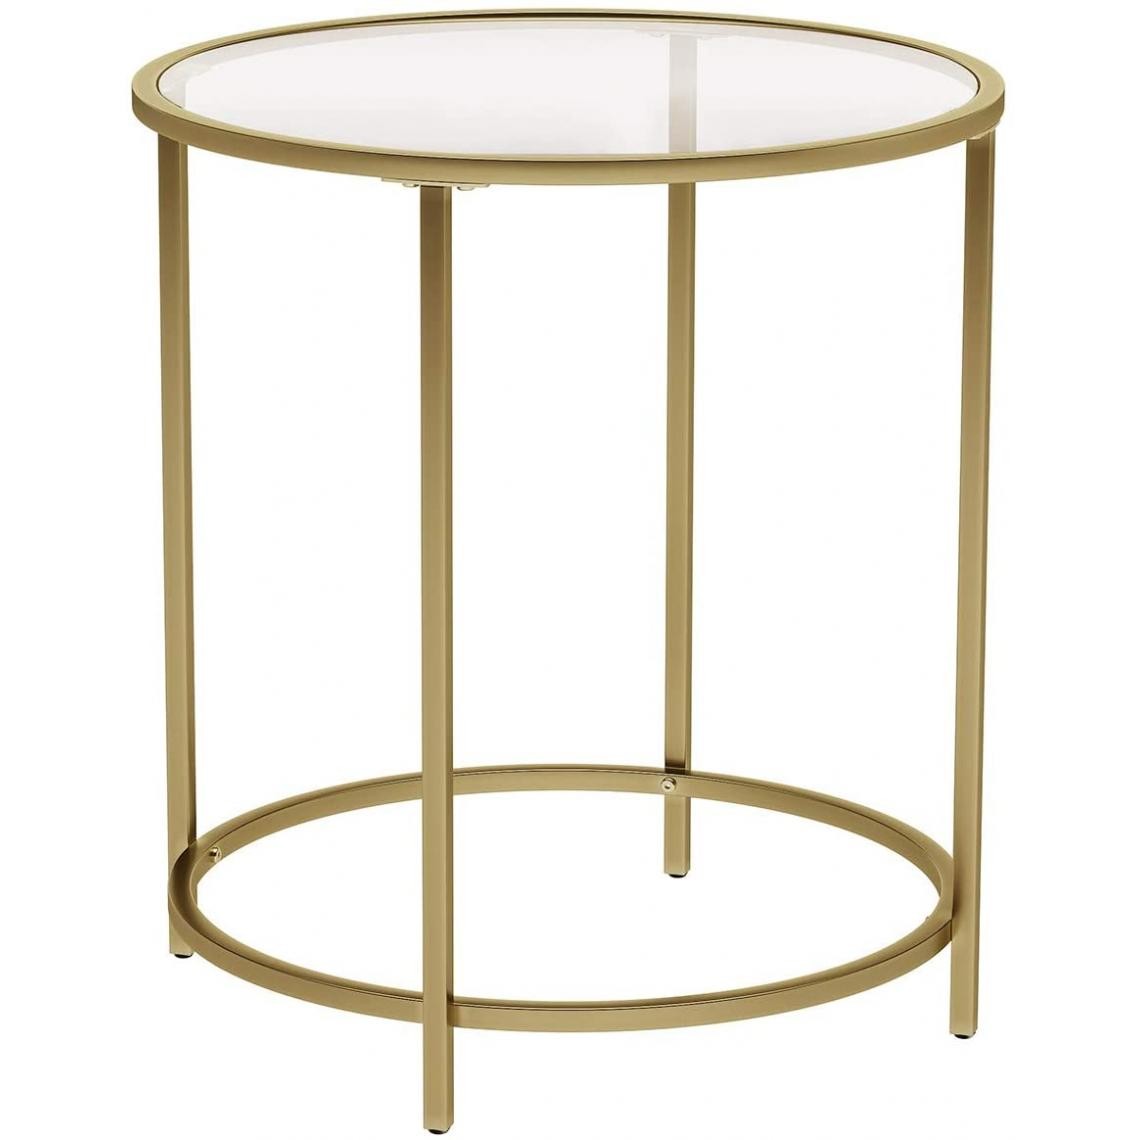 Helloshop26 - Table d 'appoint ronde dessus en verre trempé cadre en métal bout de canapé table console table de chevet pour salon balcon doré 12_0001028/2 - Tables basses